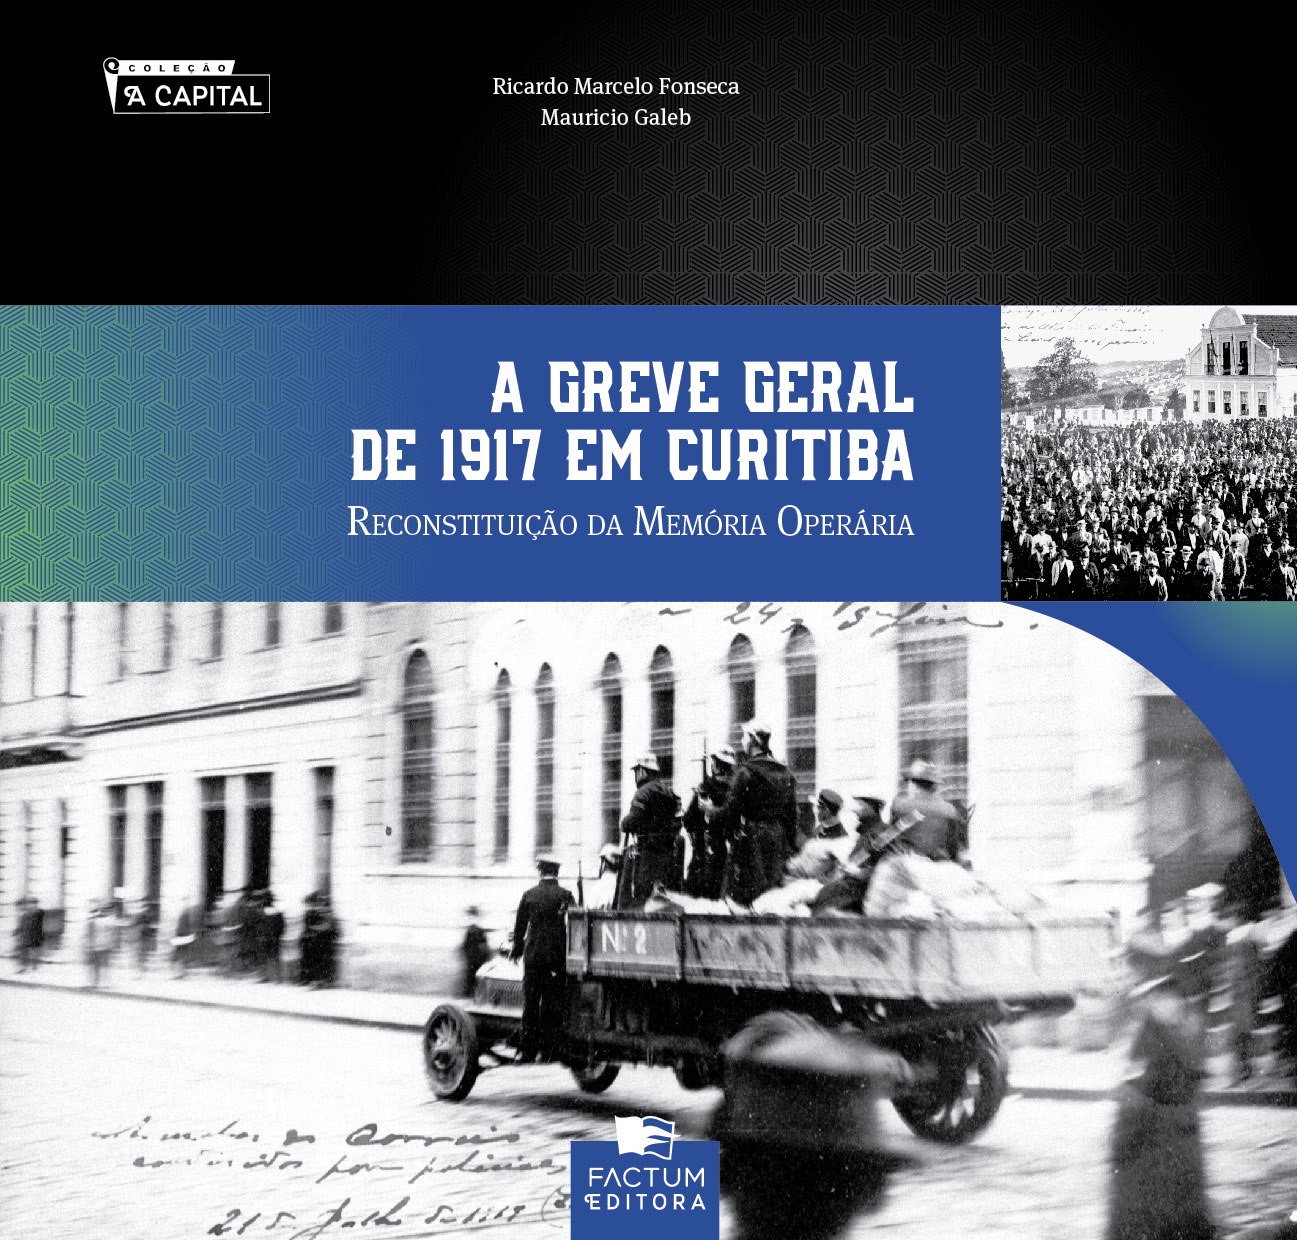 Lançamento do 15º volume da Coleção A Capital.